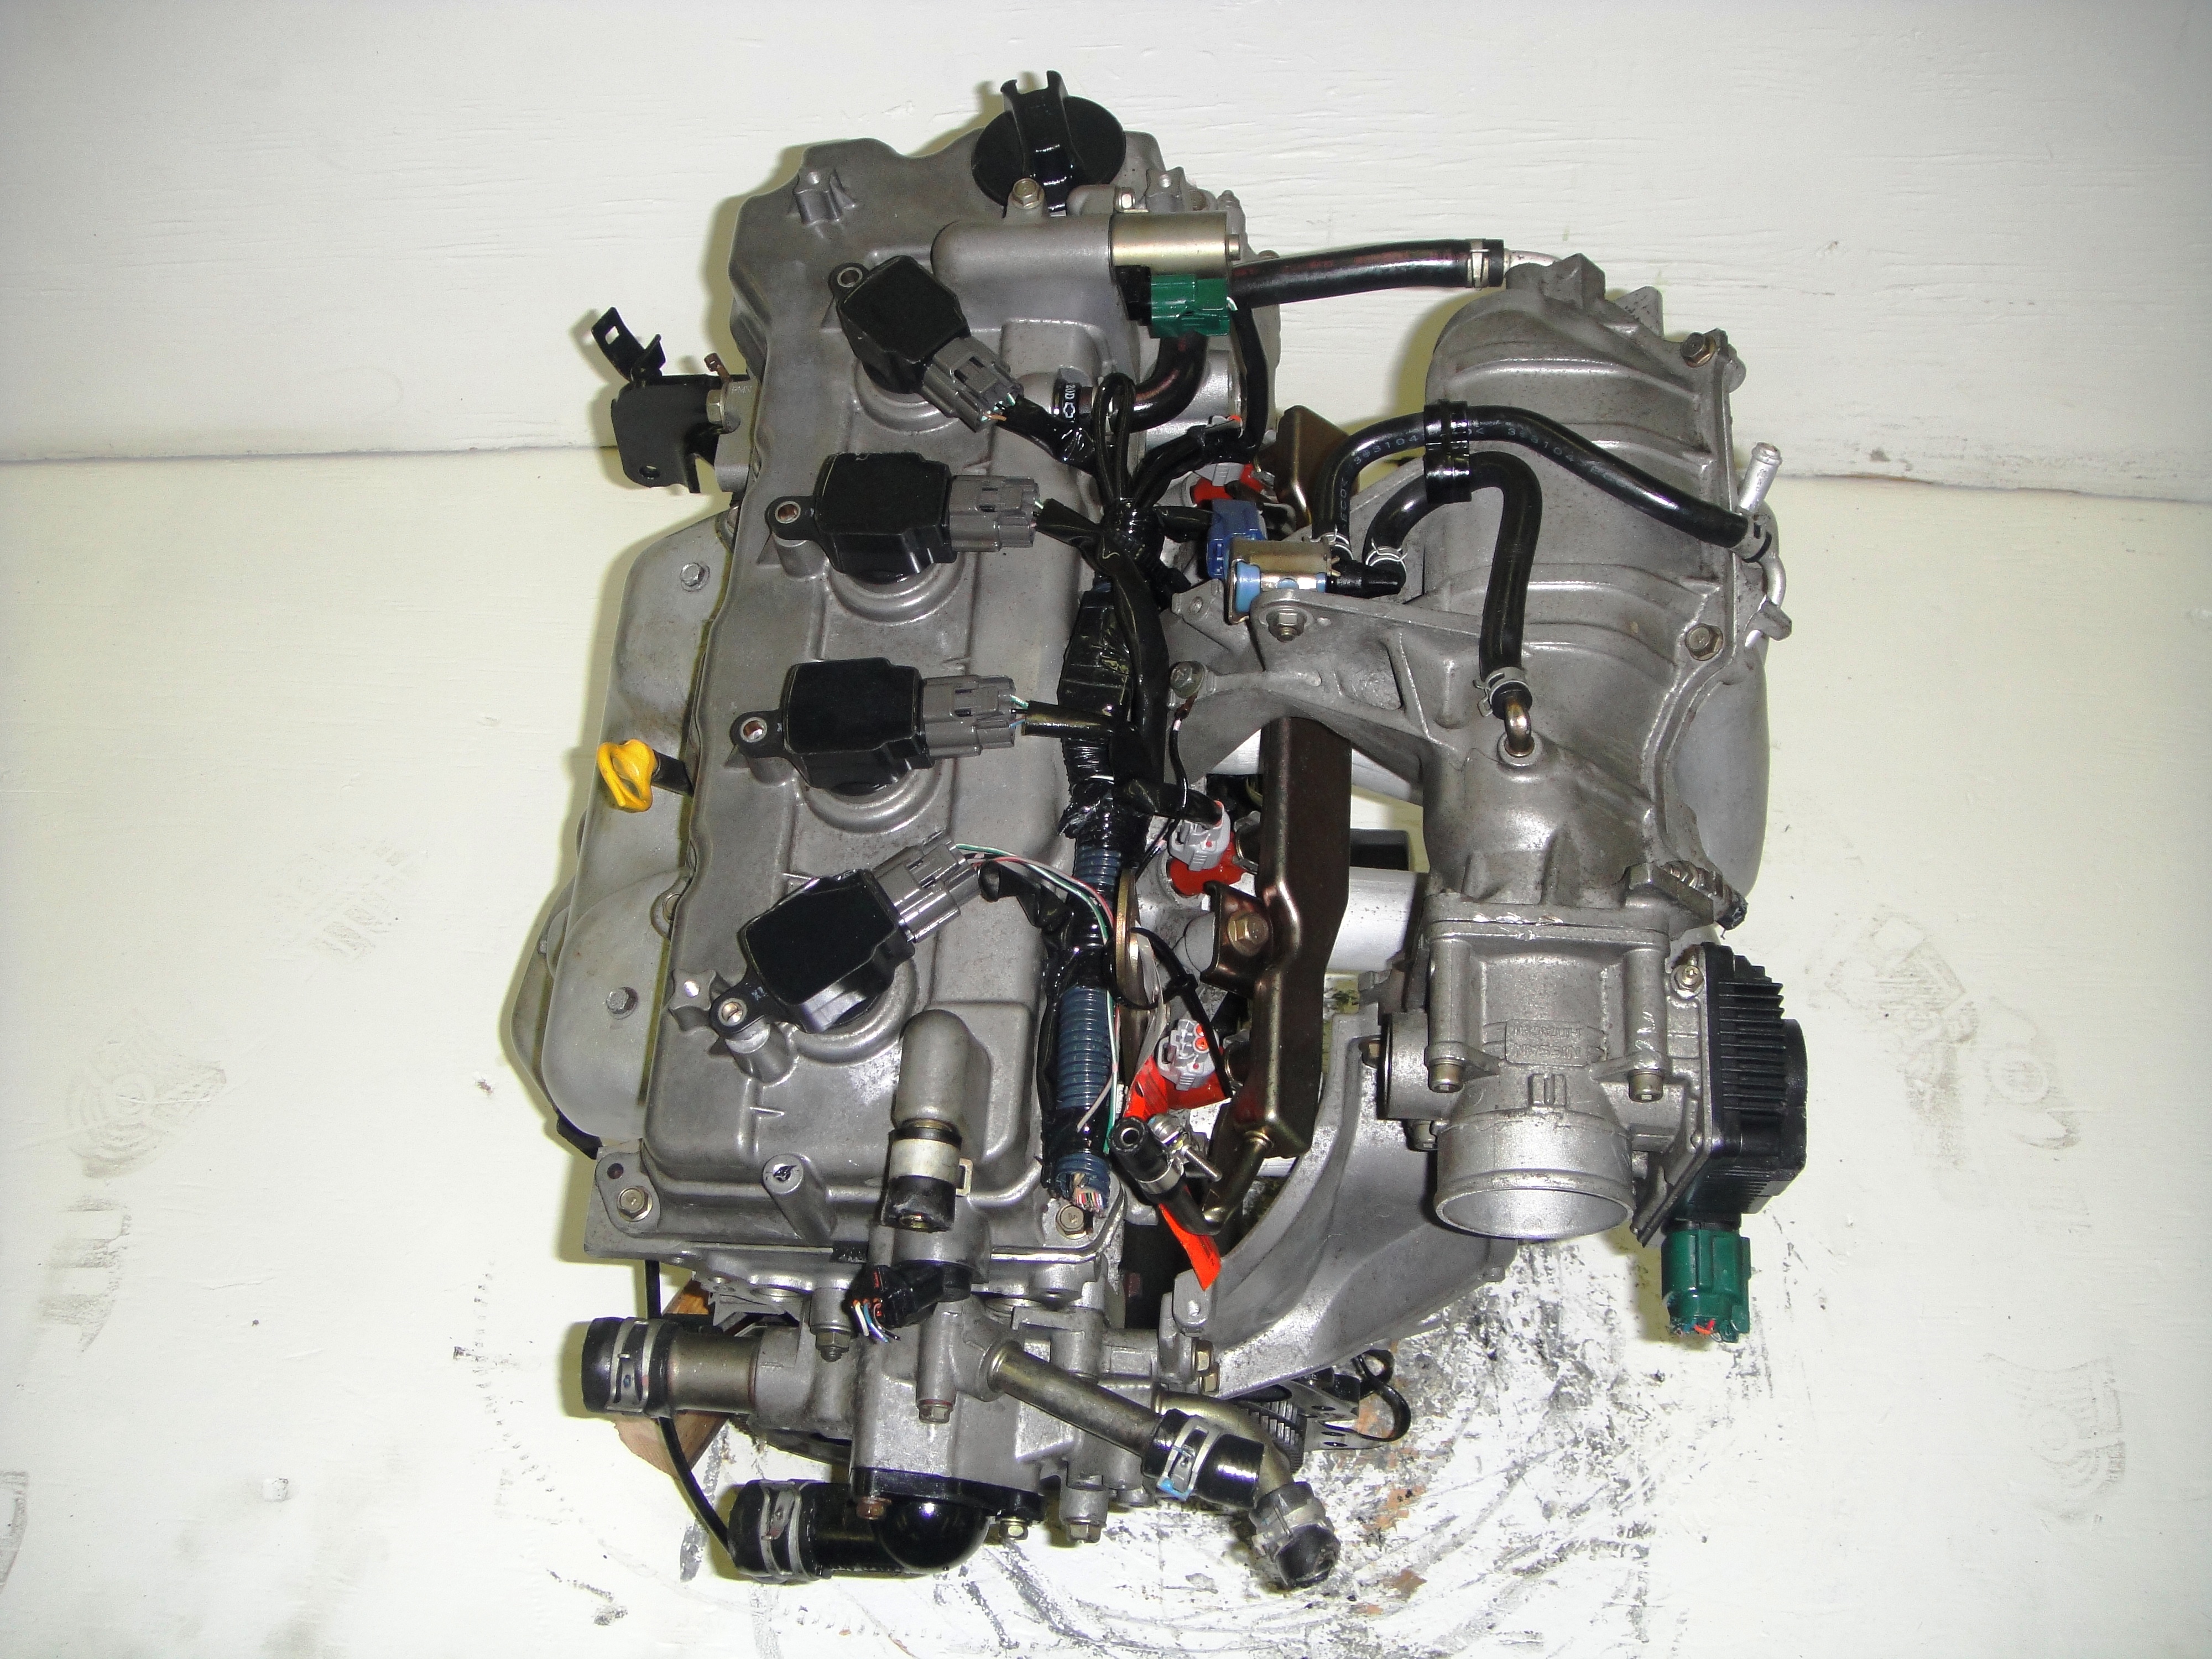 2003 Nissan sentra rebuilt engine